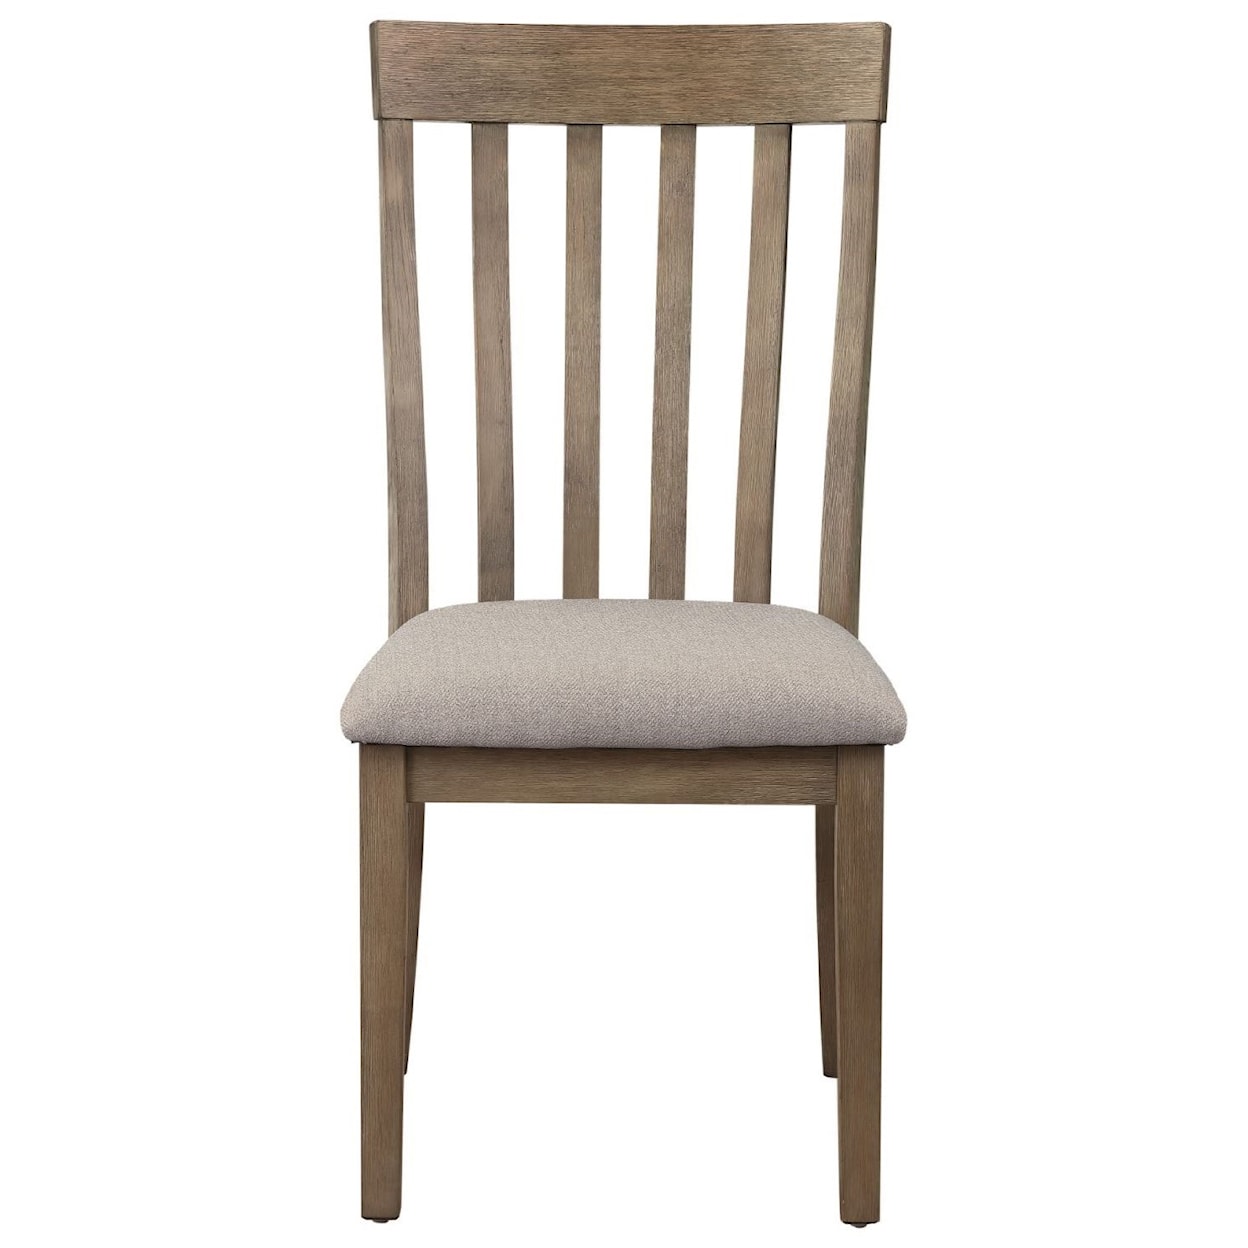 Homelegance Armhurst Side Chair